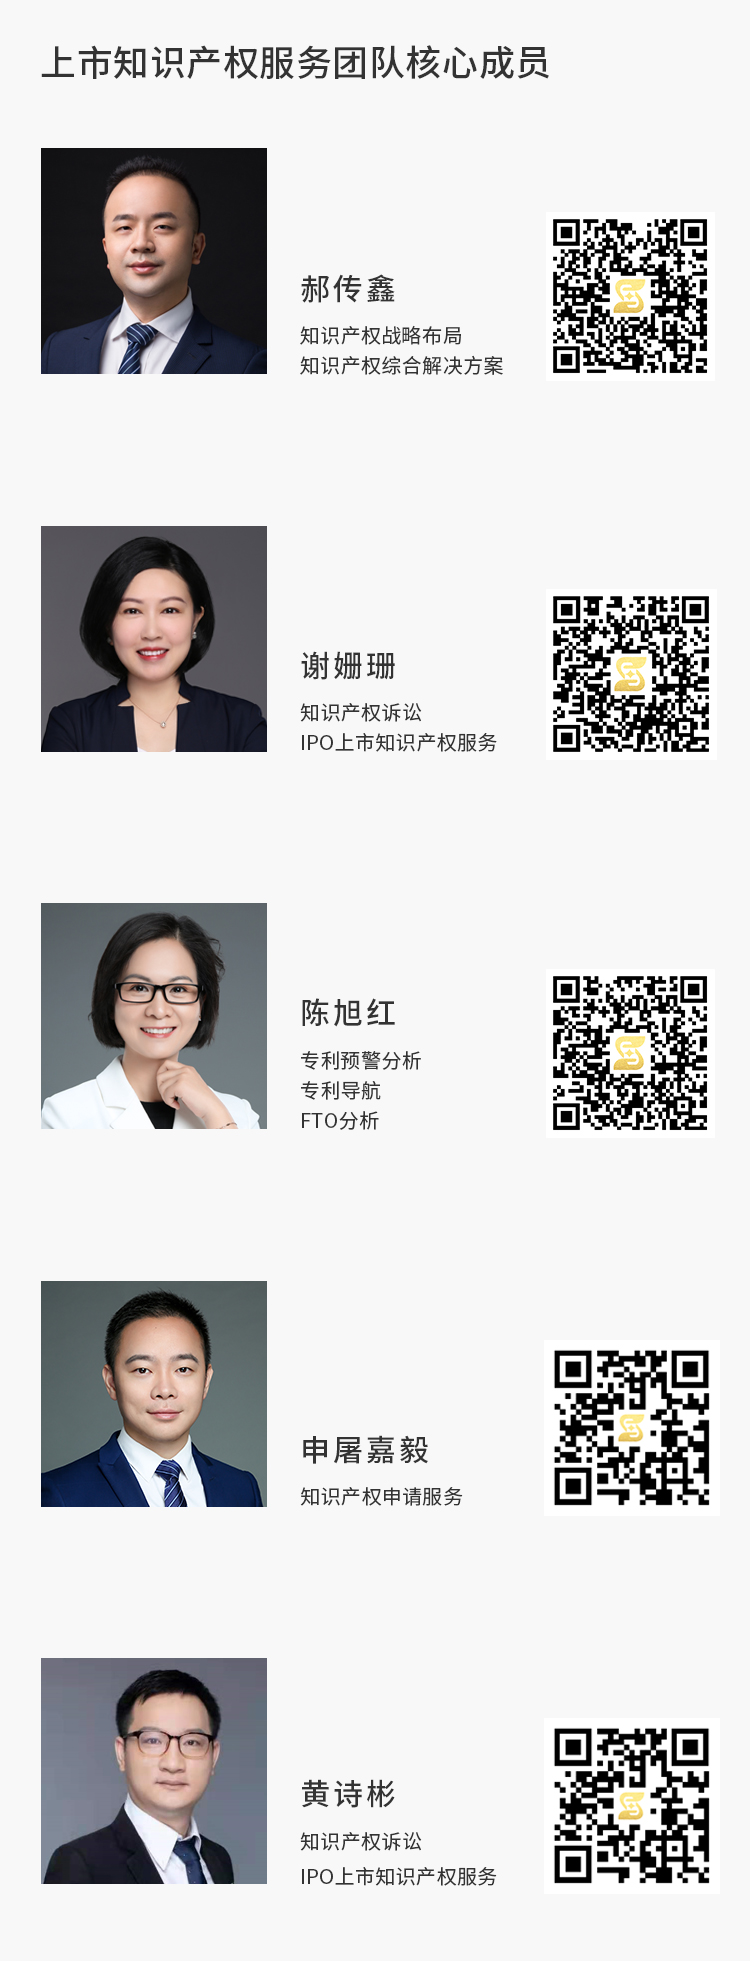 上市知识产权服务团队核心成员(5).jpg